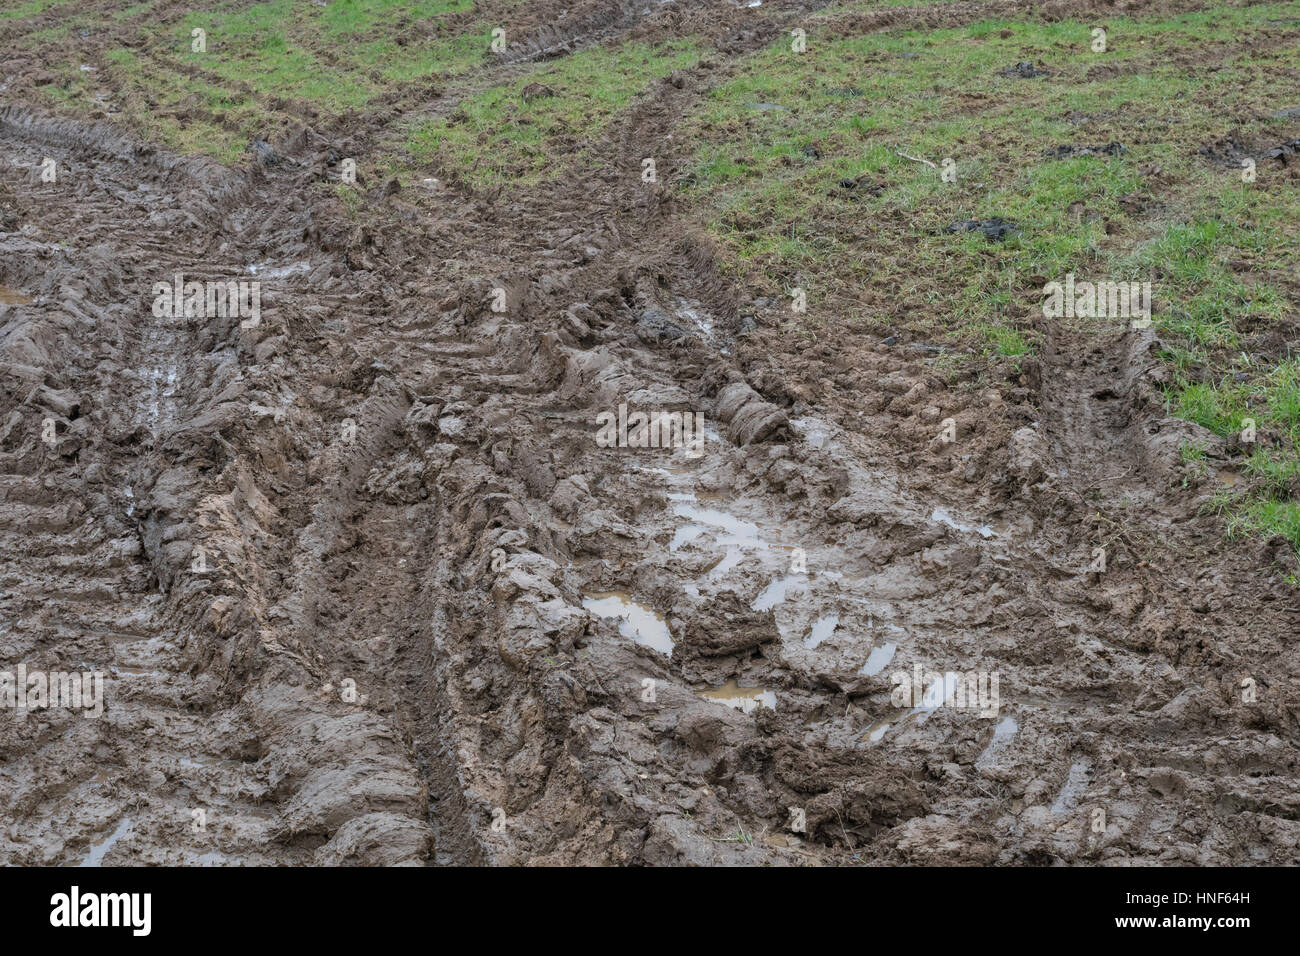 Spesso il trattore fangoso tracce di pneumatici nel campo ingresso / i brani sull'erba. Metafora stick nel fango, fangoso texture, superficie fangosa, fango, stagione invernale fango. Foto Stock